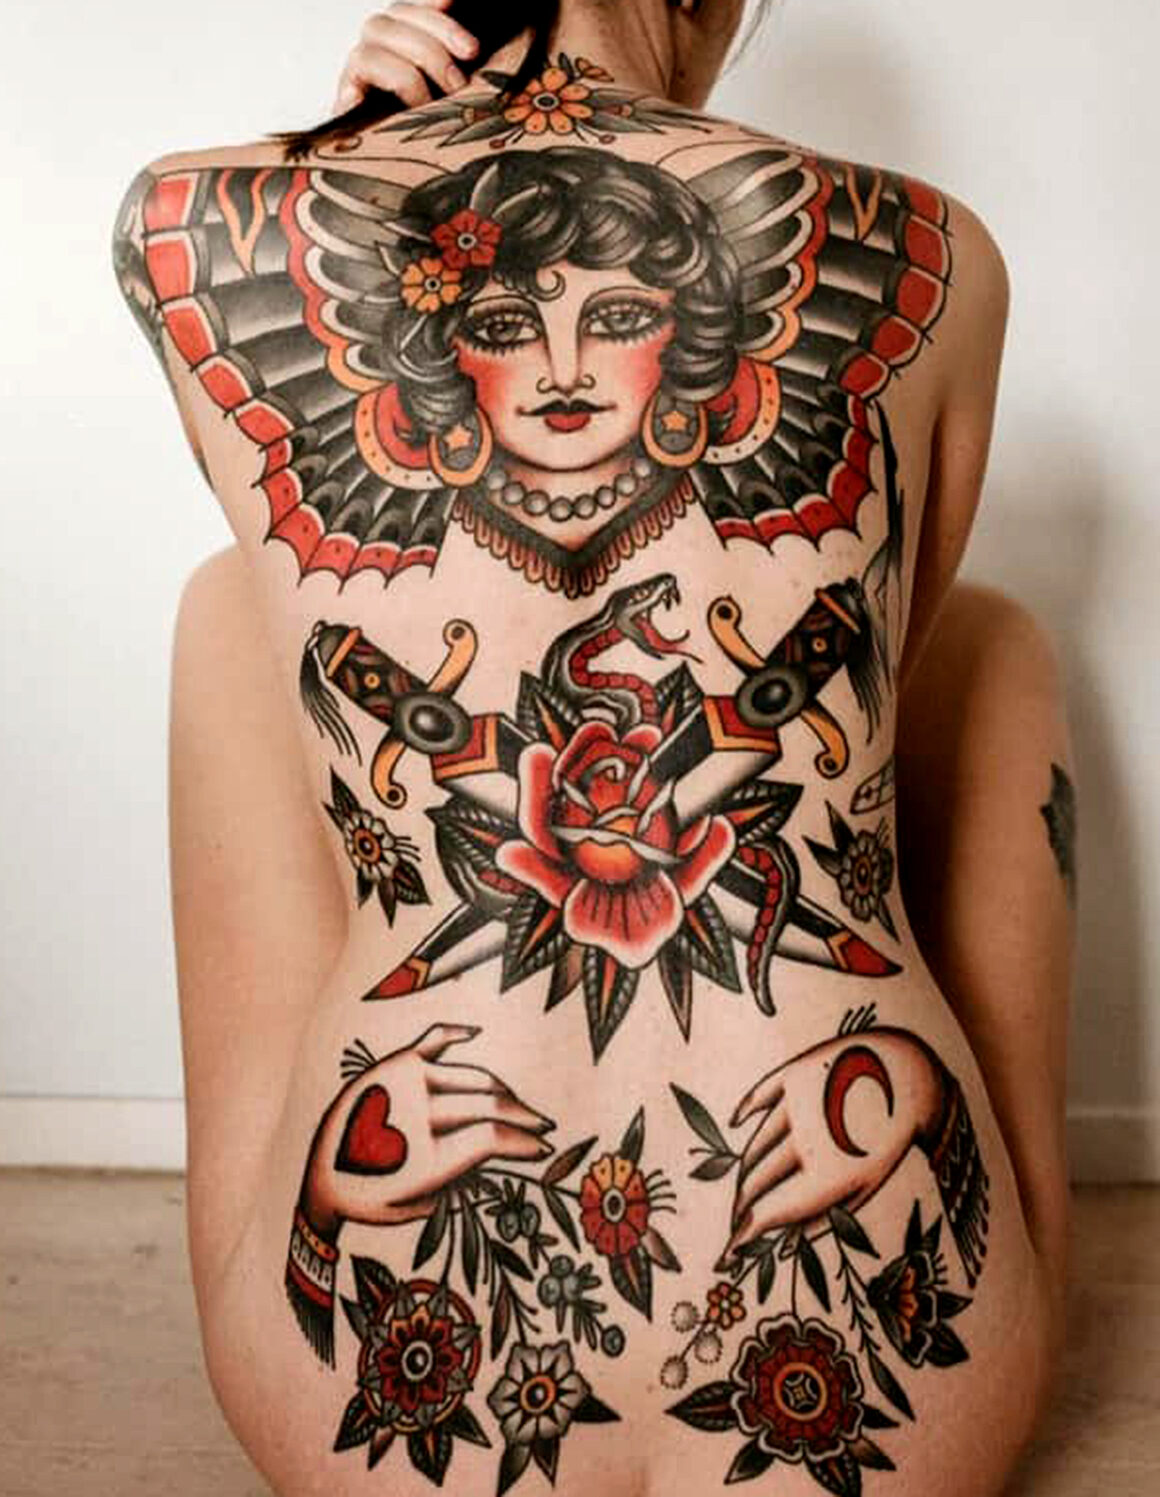 Tattoo by Moira Ramone, tattoo artist, @moira.ramone